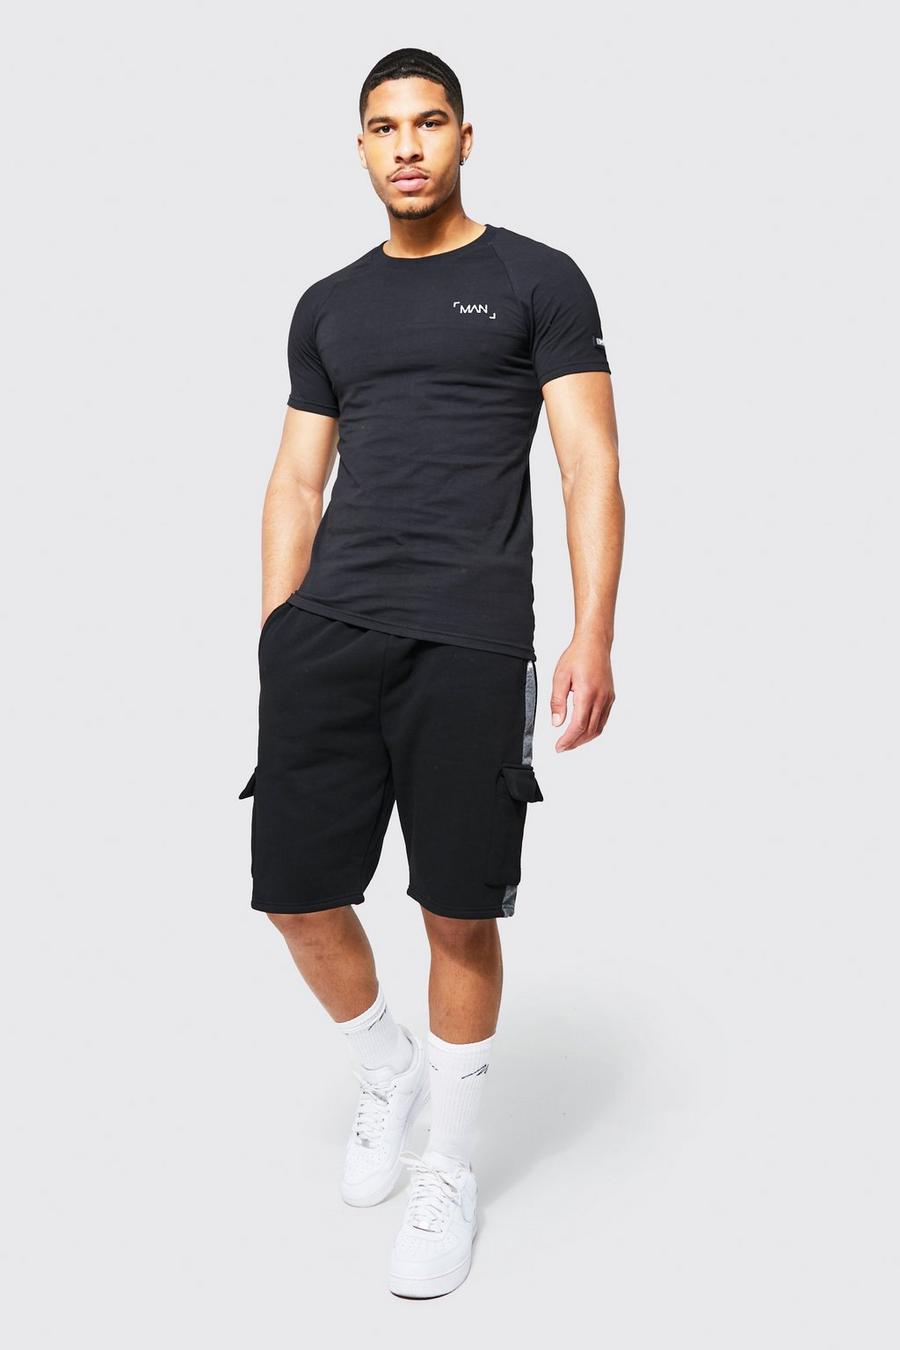 Set Tall T-shirt attillata a blocchi di colore & pantaloncini, Black nero